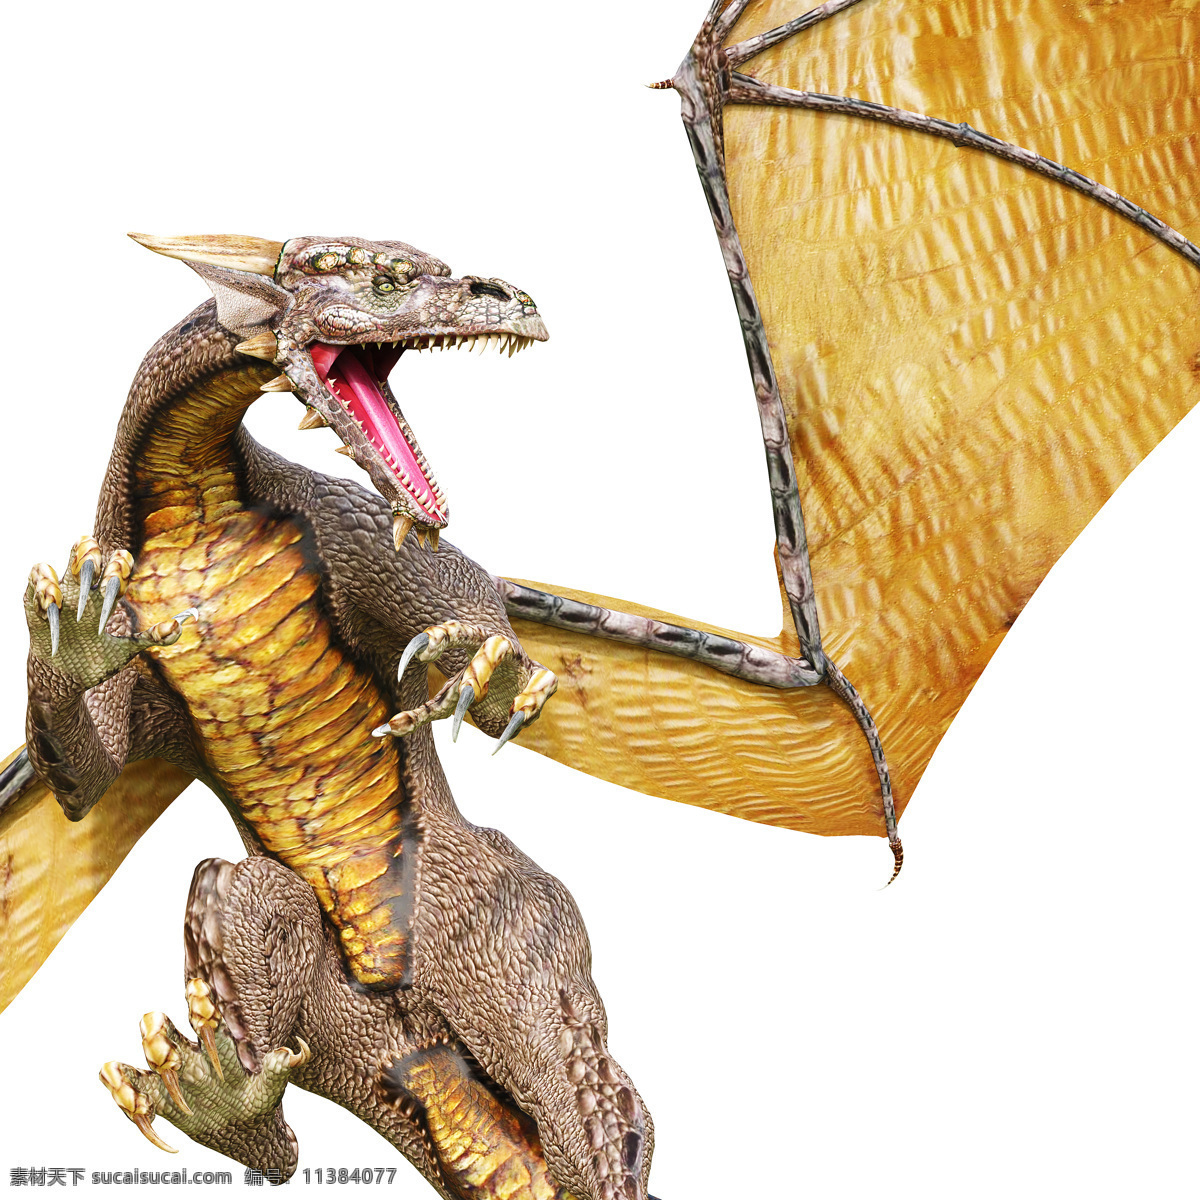 龙模型 远古生物 尖牙利爪 血盆大口 凶残 最大的掠食者 3d模型 3d作品 空中飞鸟 生物世界 白色